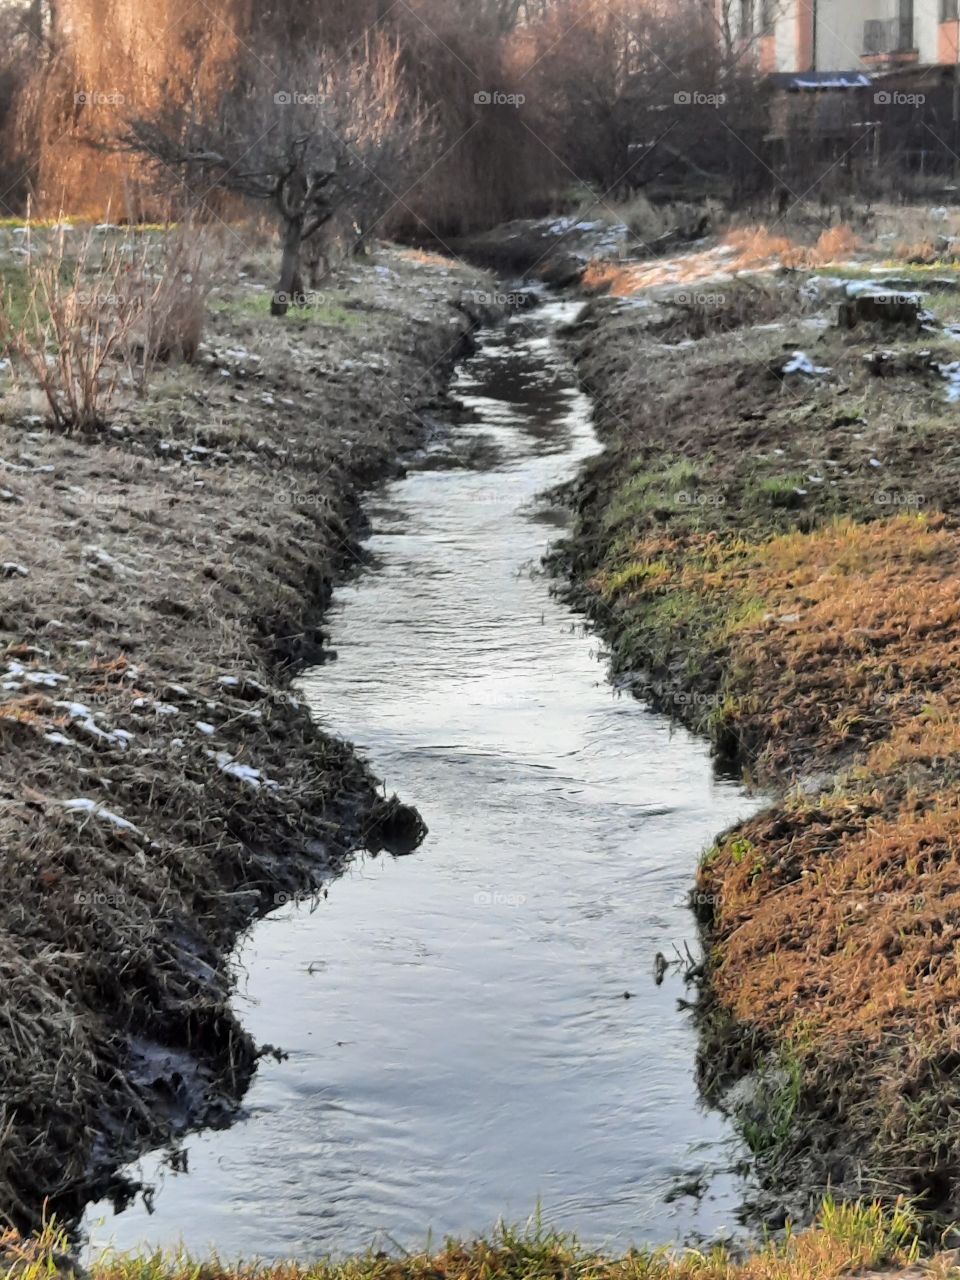 color black - black river banks in winter 2021